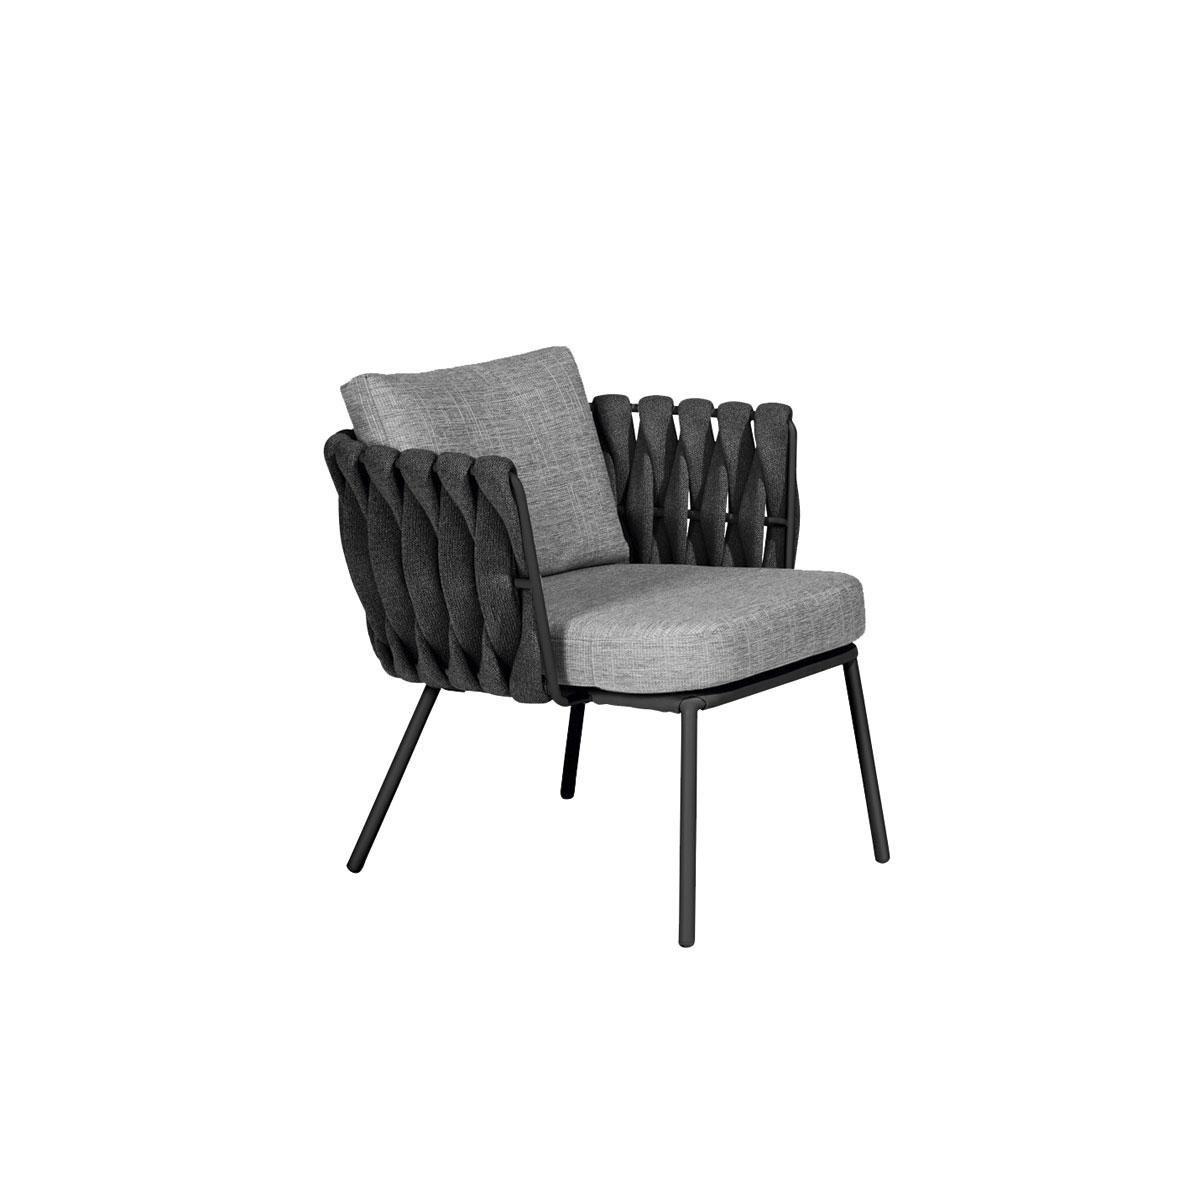 La collection Tosca de Tribu s'enrichit de tables basses en acier thermolaqué et en céramique ainsi que de chaises avec une assise textile Tricord, dessinée par Monica Armani. 